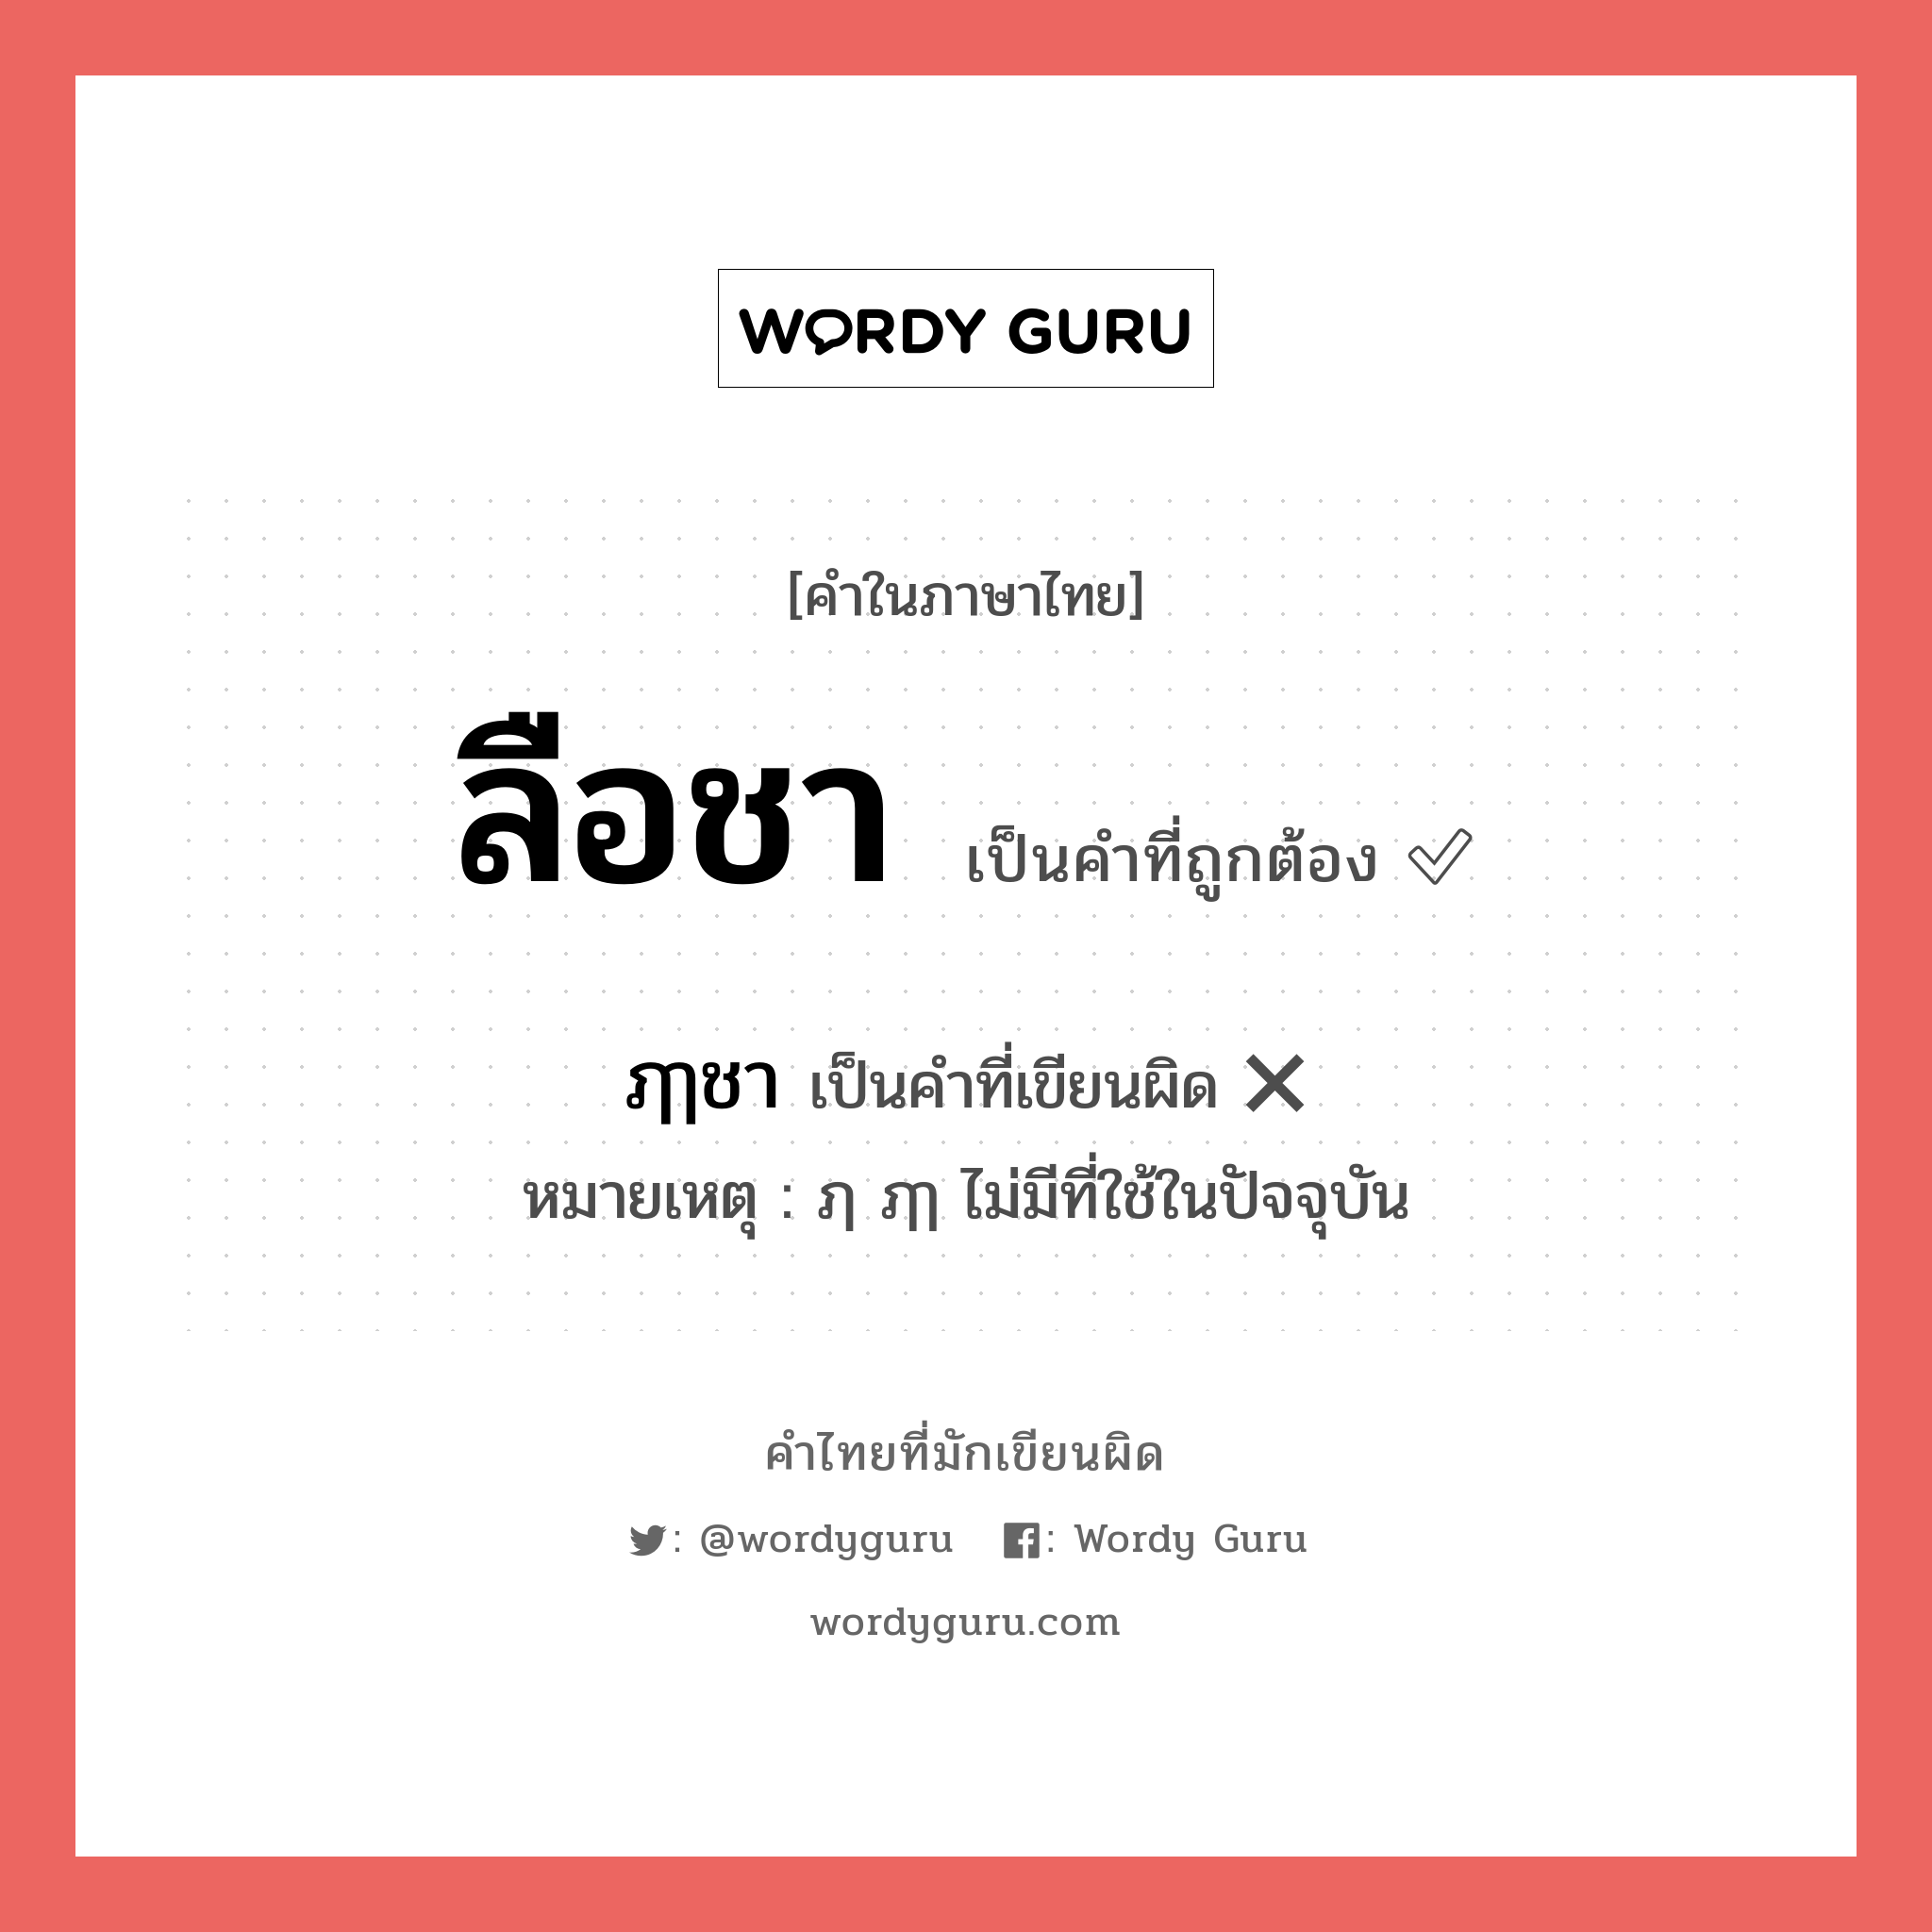 ฦๅชา หรือ ลือชา คำไหนเขียนถูก?, คำในภาษาไทยที่มักเขียนผิด ฦๅชา คำที่ผิด ❌ ลือชา หมายเหตุ ฦ ฦๅ ไม่มีที่ใช้ในปัจจุบัน